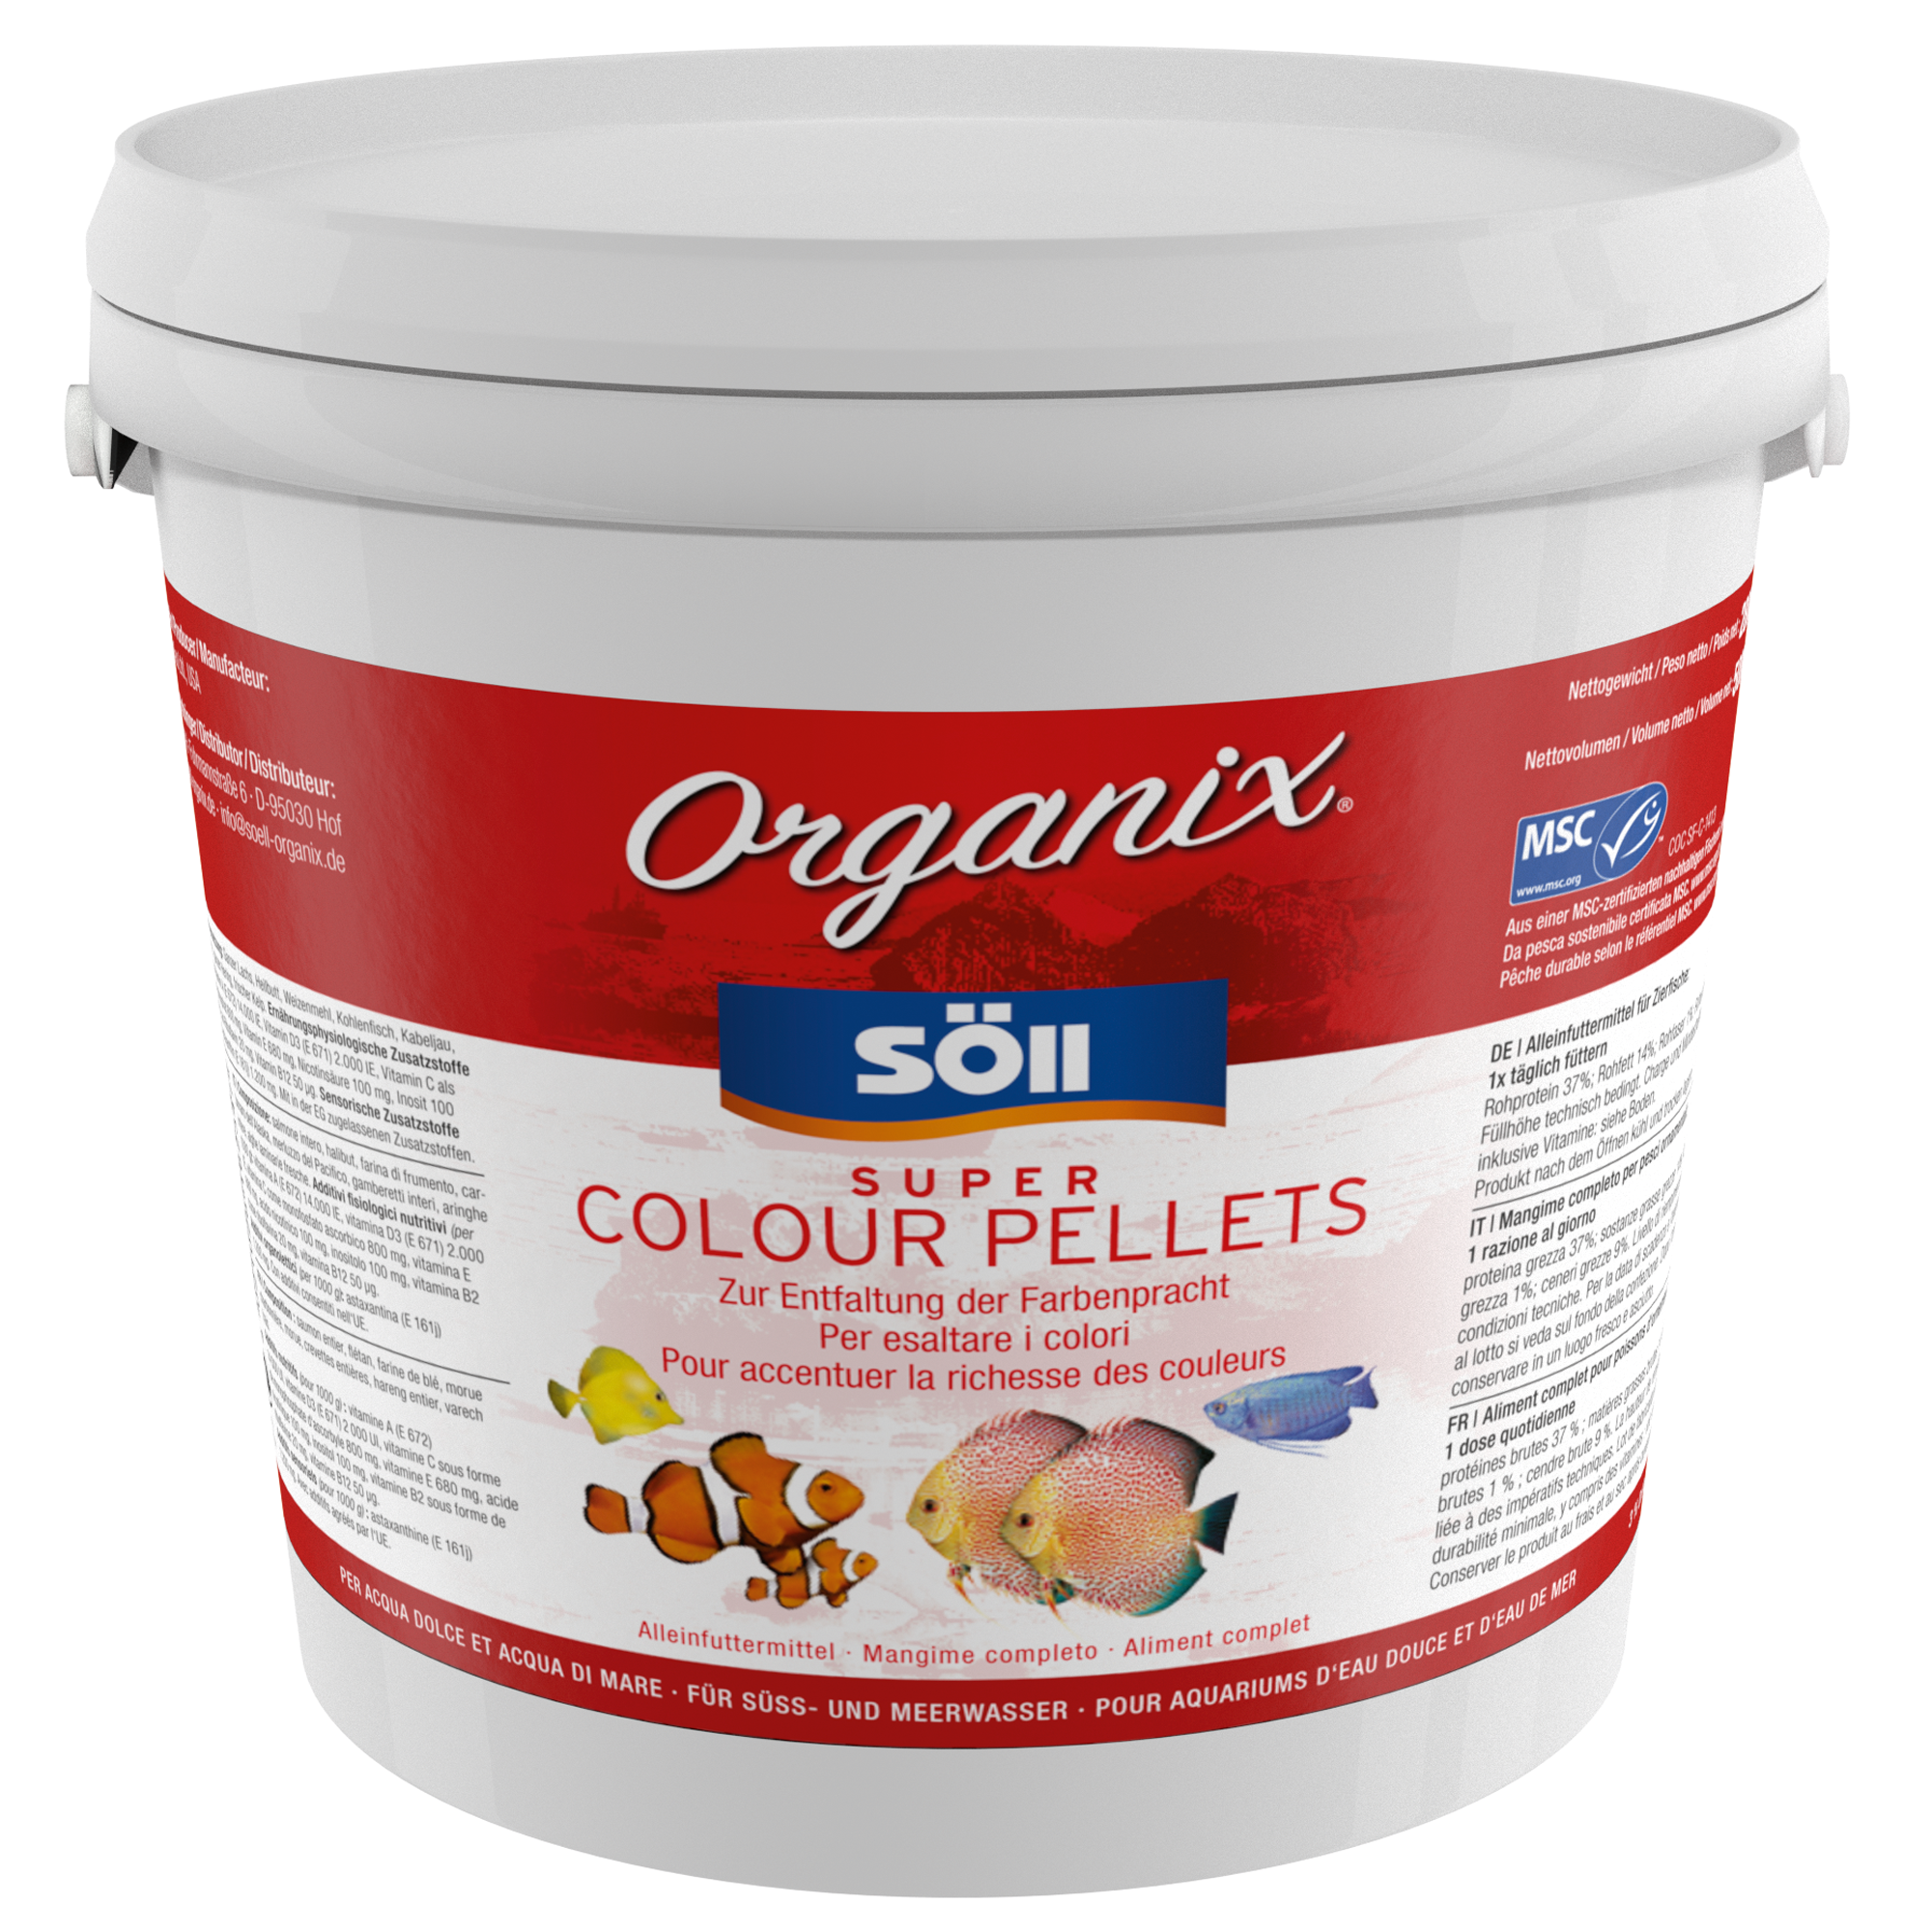 Organix Super Colour Pellets 5 l + product picture